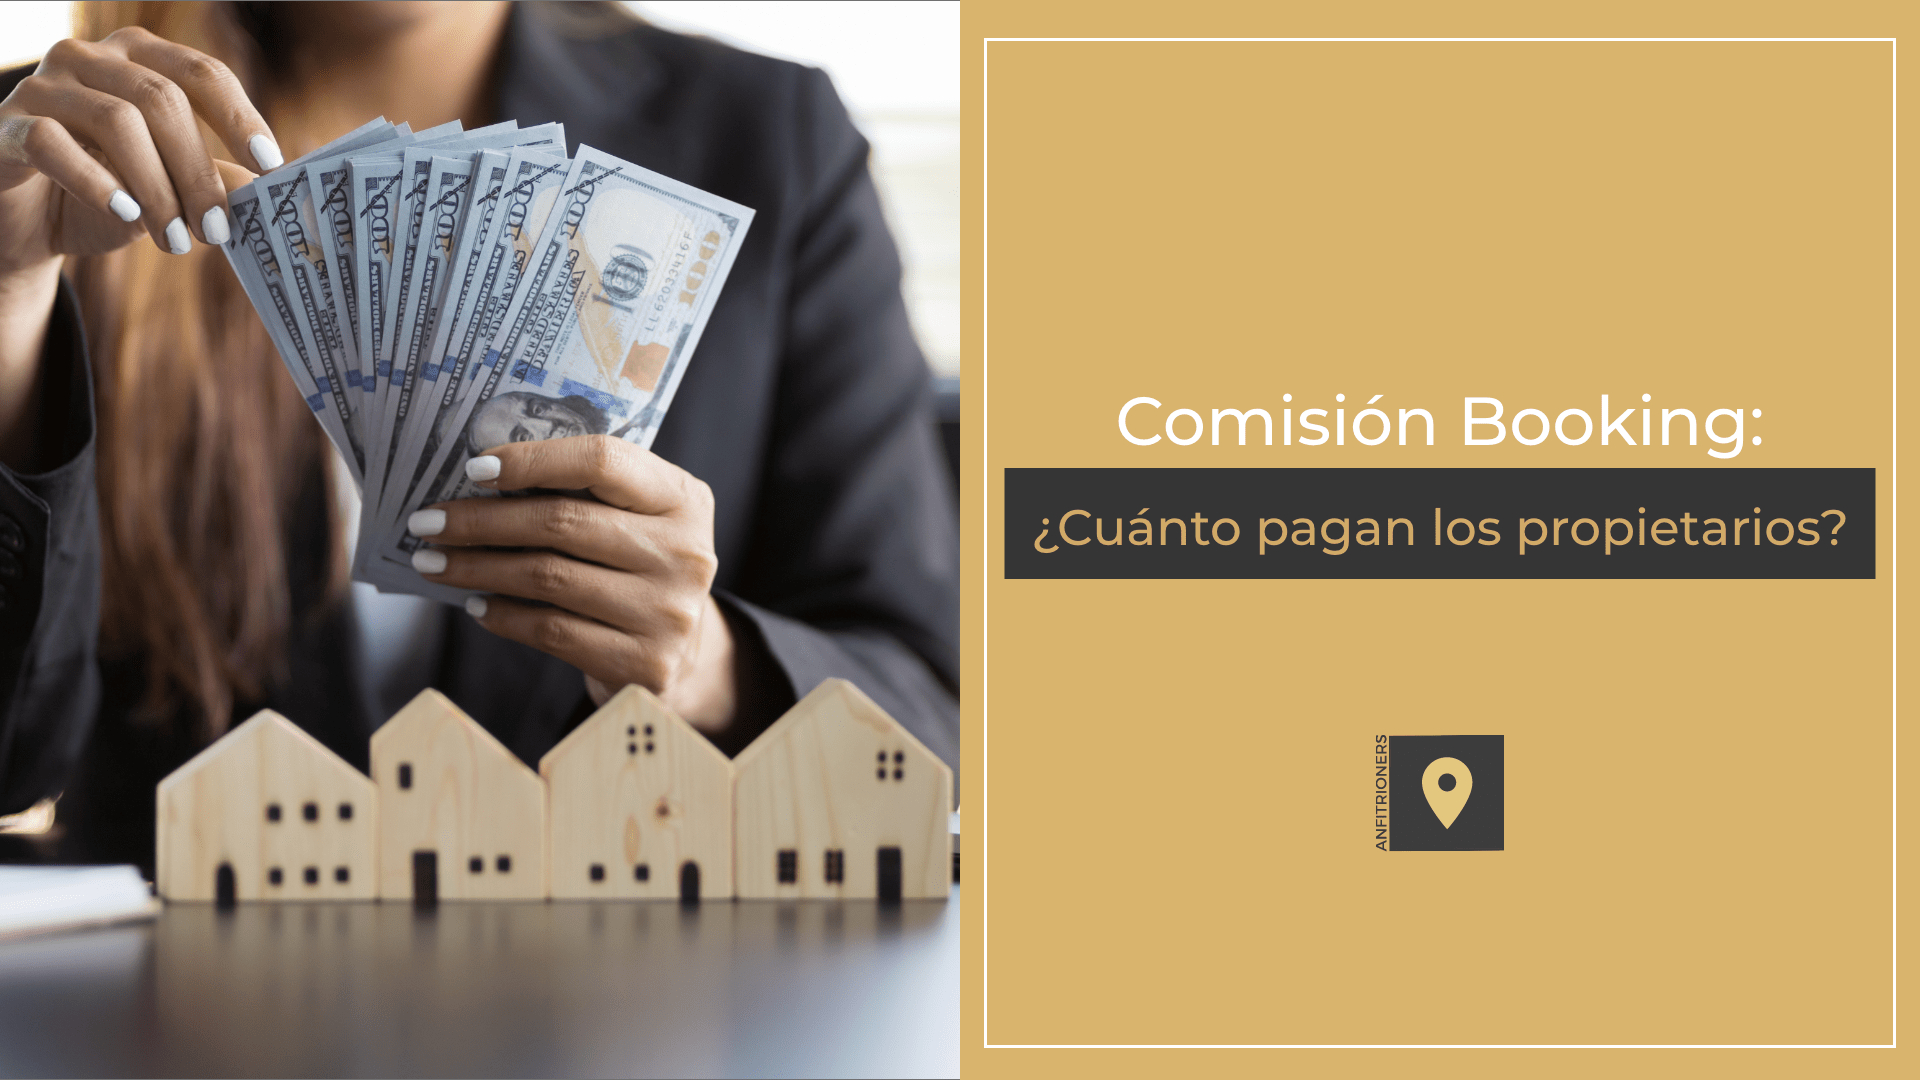 Comisión Booking: ¿Cuánto deben pagar los propietarios?